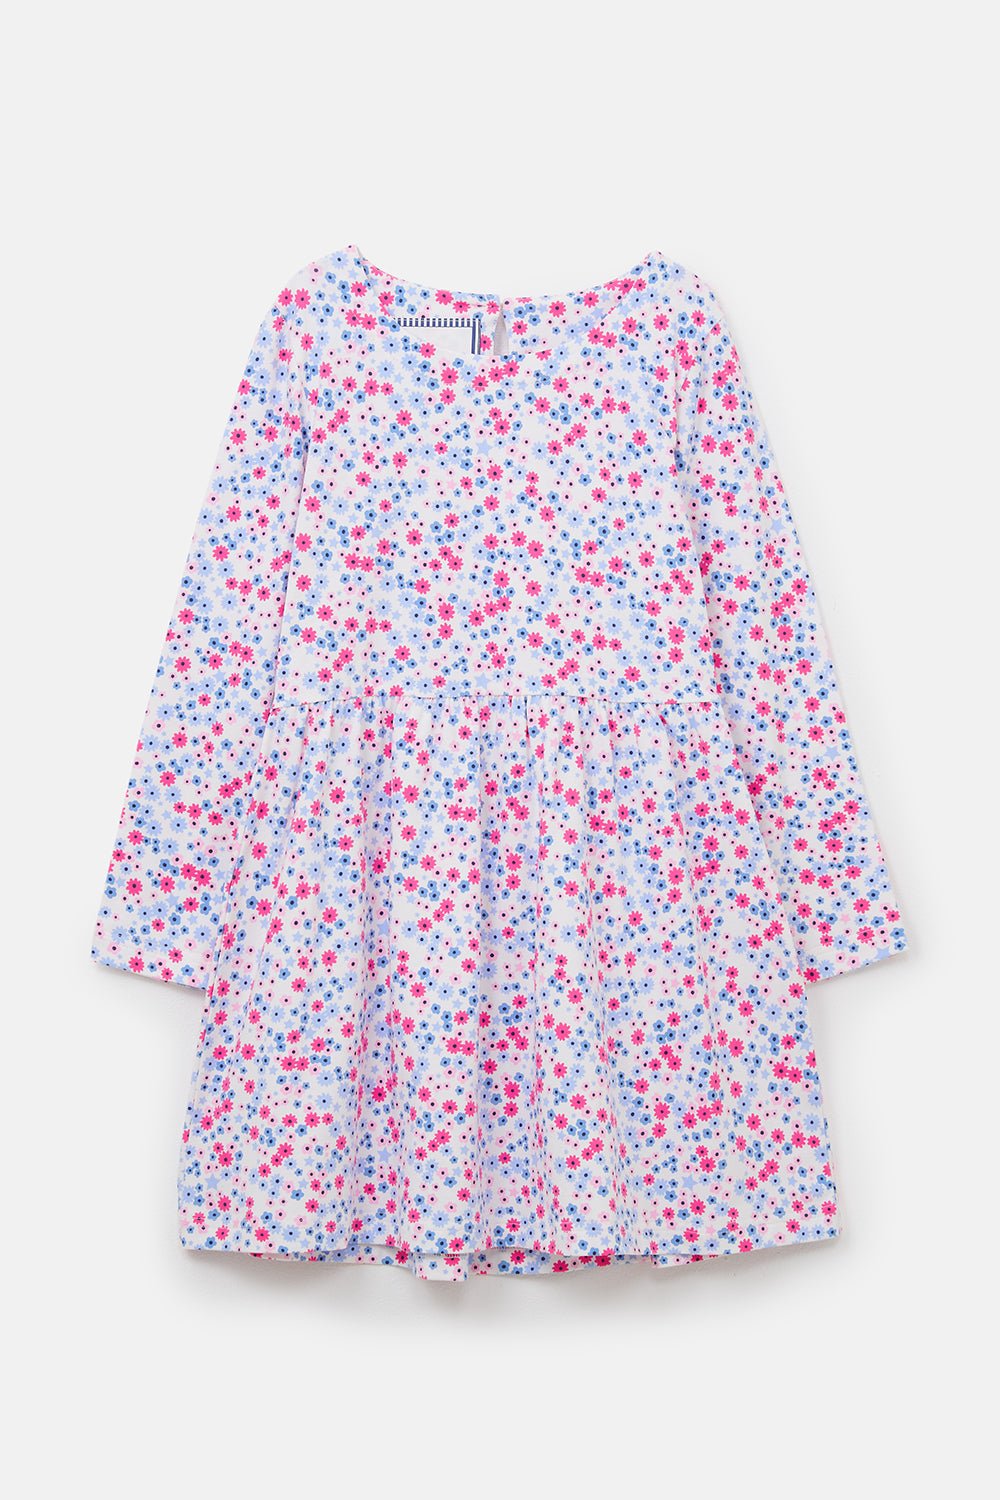 Ellie Girls' Dress, Pink Blue Floral